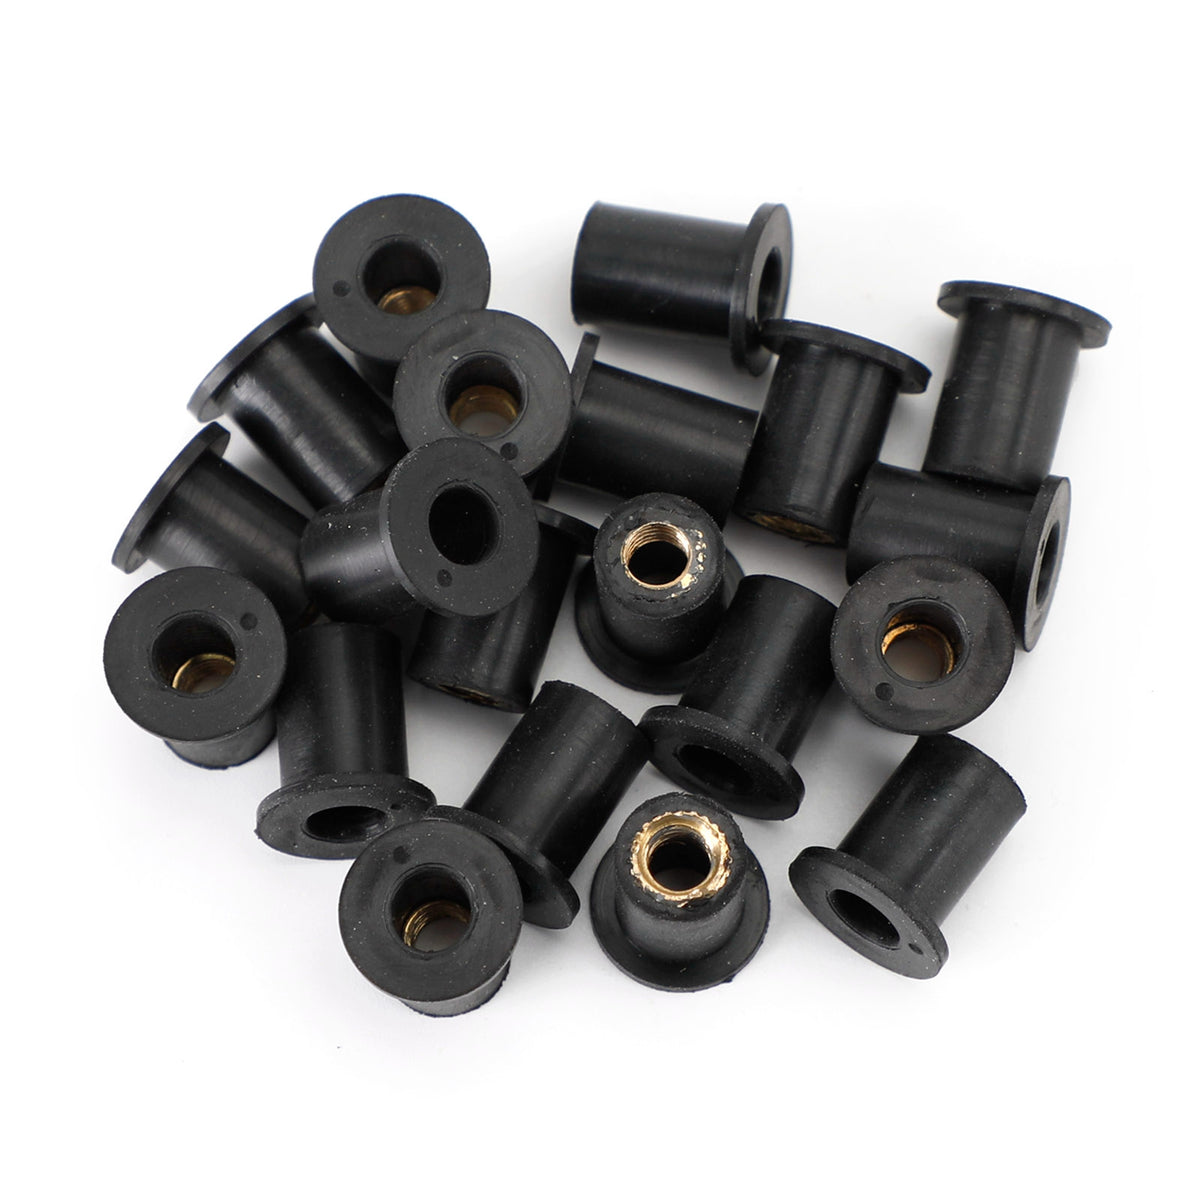 20 Stück M5 Gummi-Nutmuttern für Windschutzscheibe und Verkleidung, 5-mm-Wellmuttern, passend für 10-mm-Loch